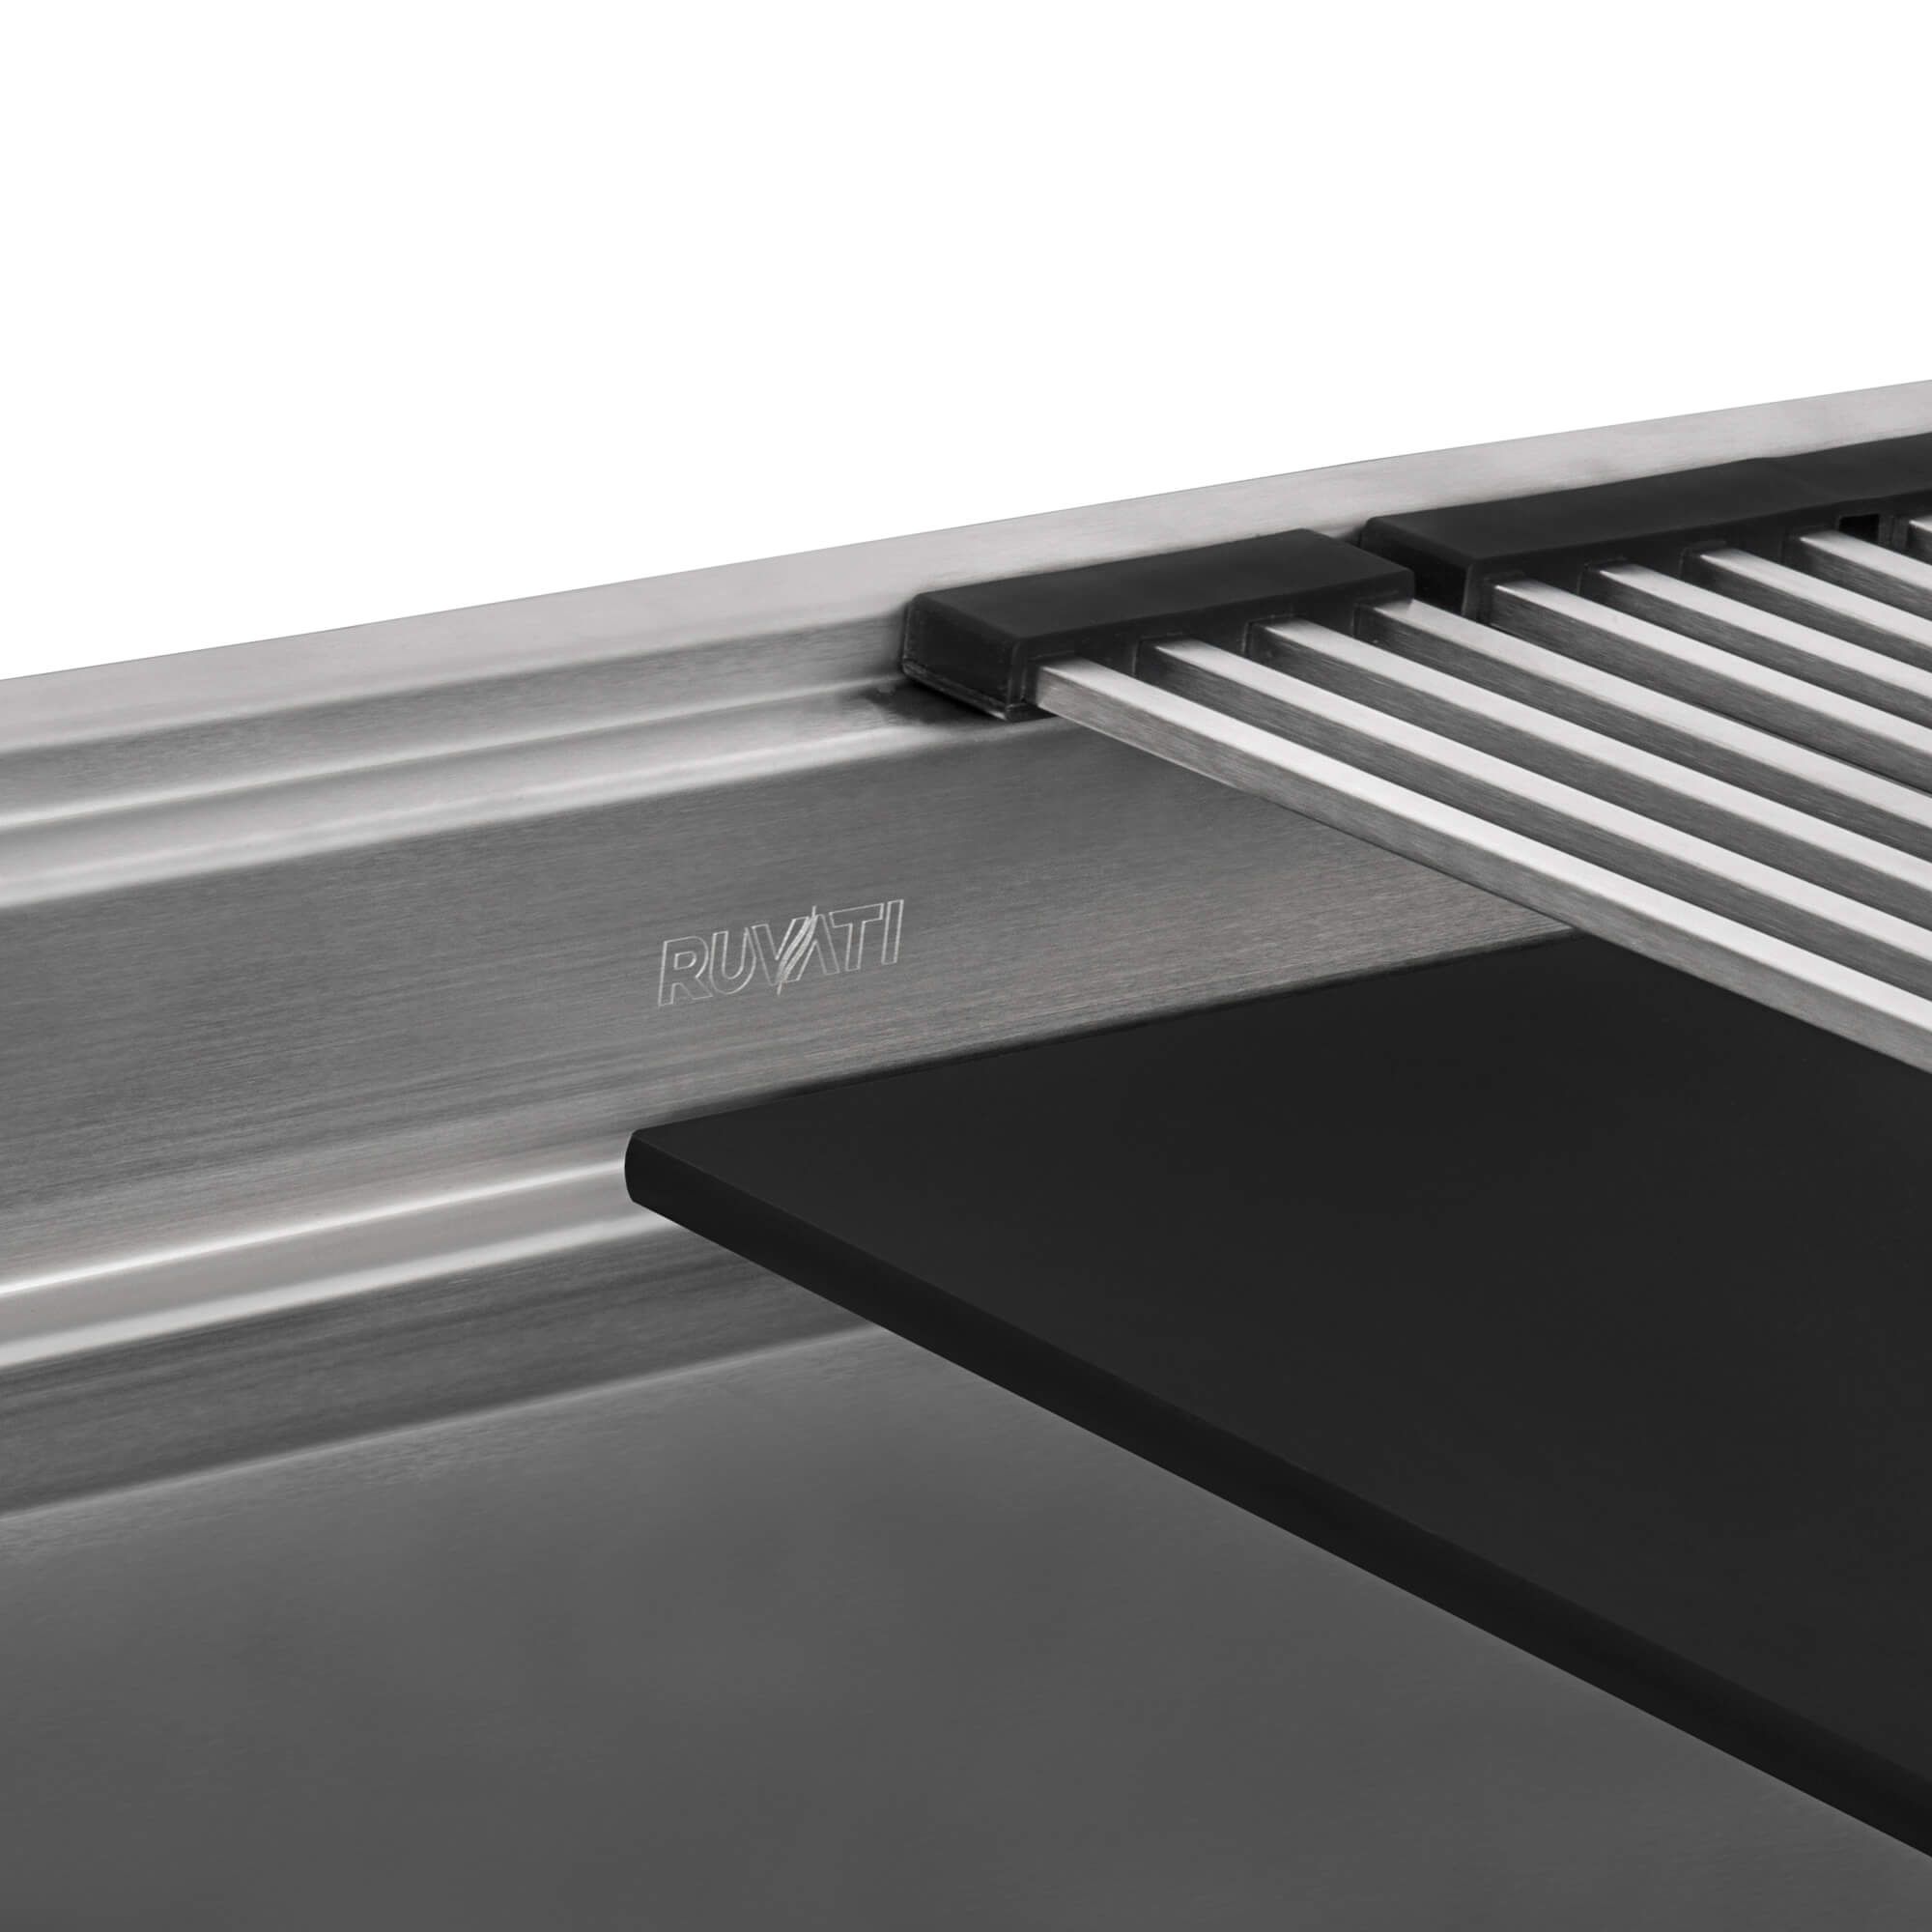 Ruvati - 33-inch Workstation Two-Tiered Ledge Kitchen Sink Undermount 16 Gauge Stainless Steel – RVH8224